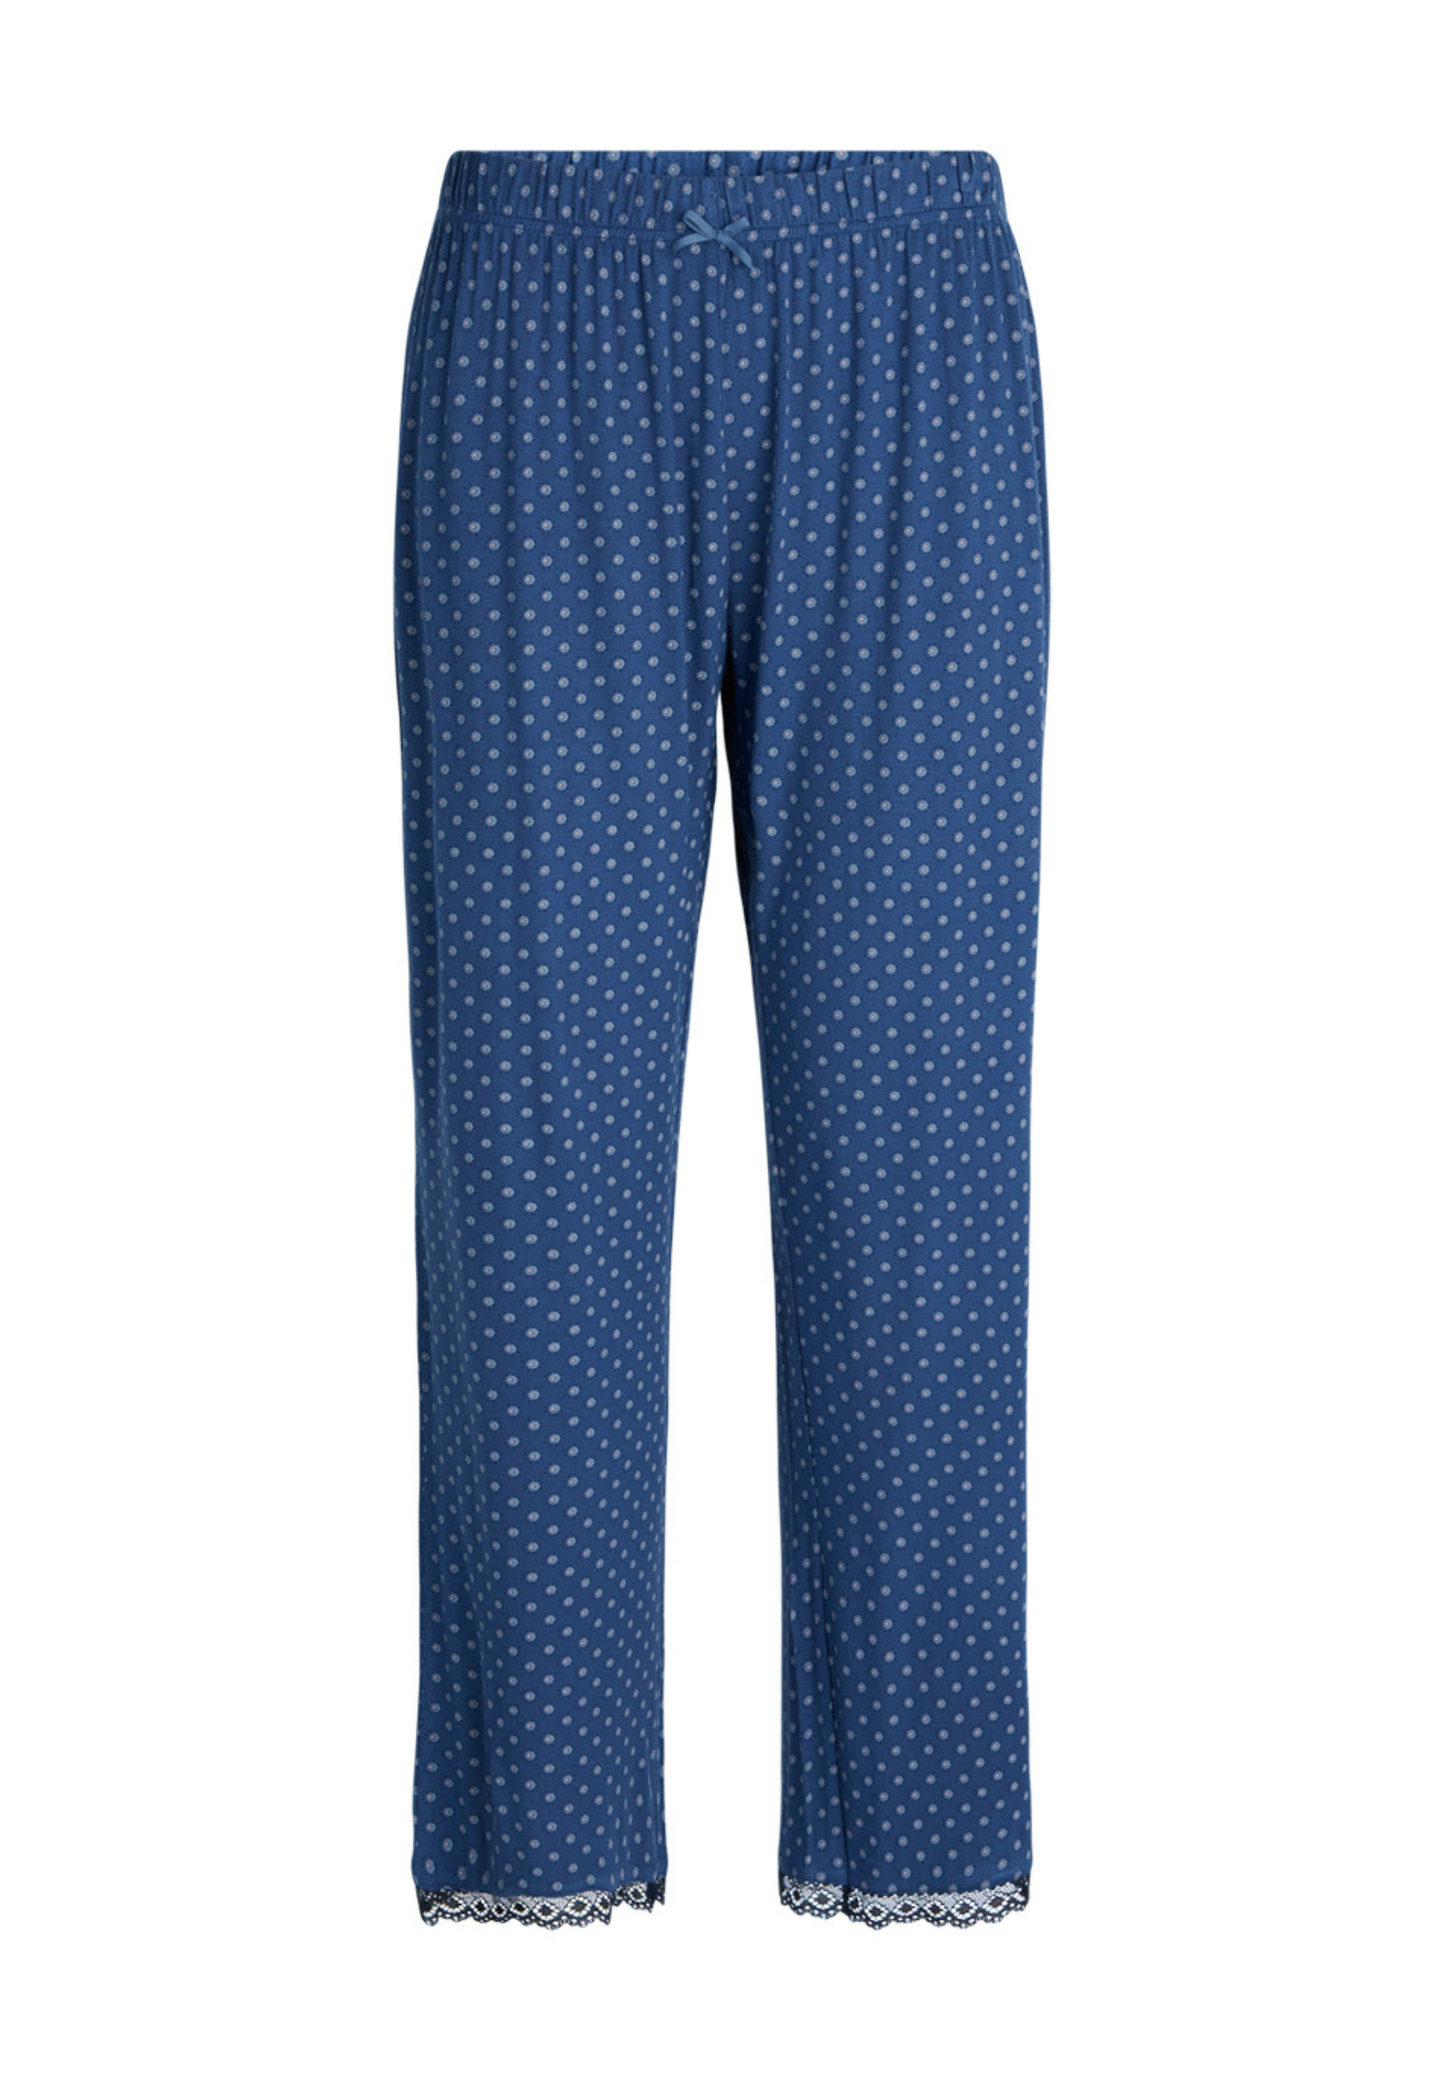 Jasmin Pyjamasbukser med prikker Blå